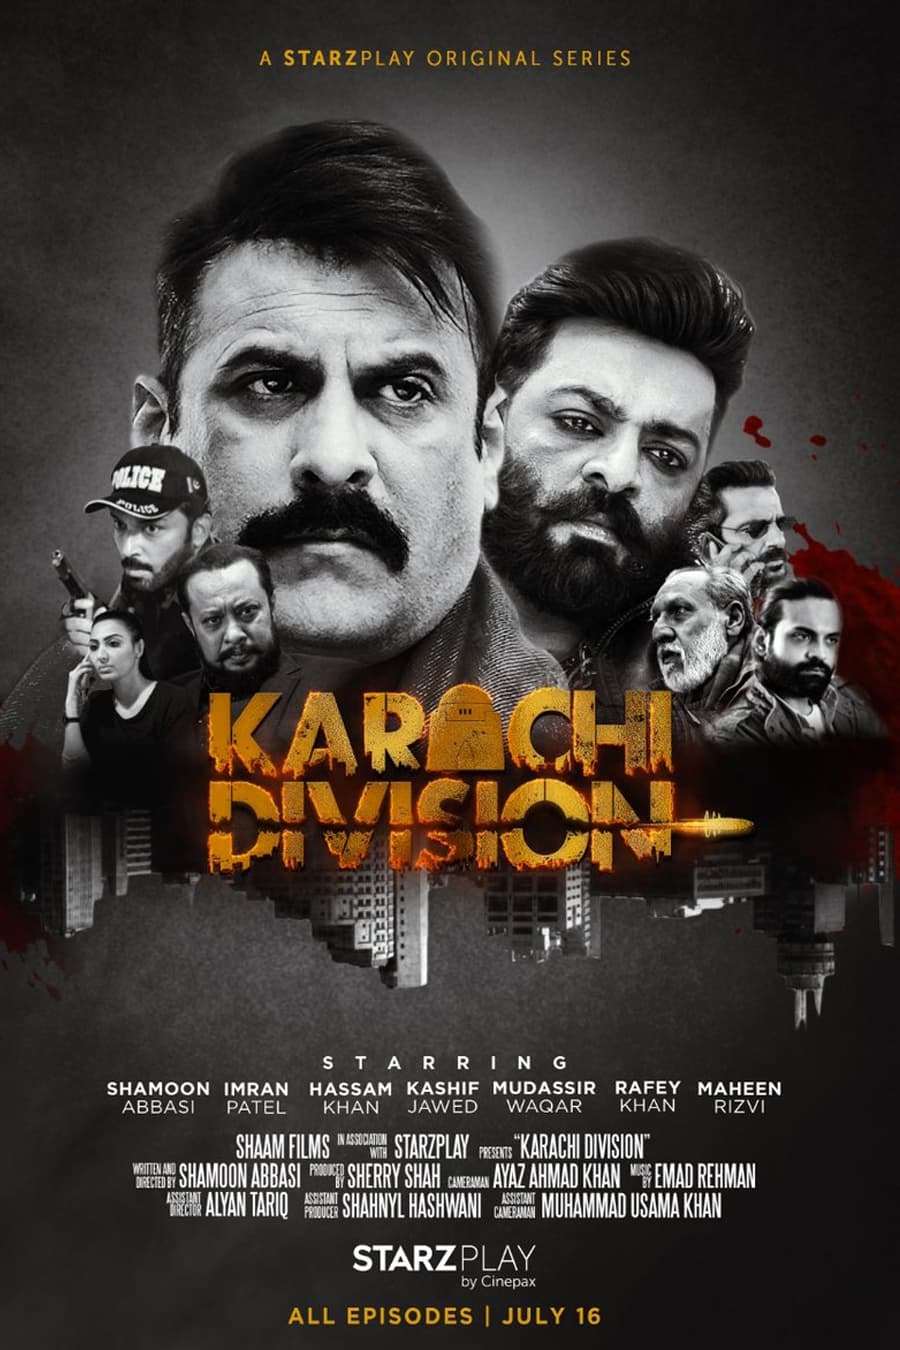 Karachi Division